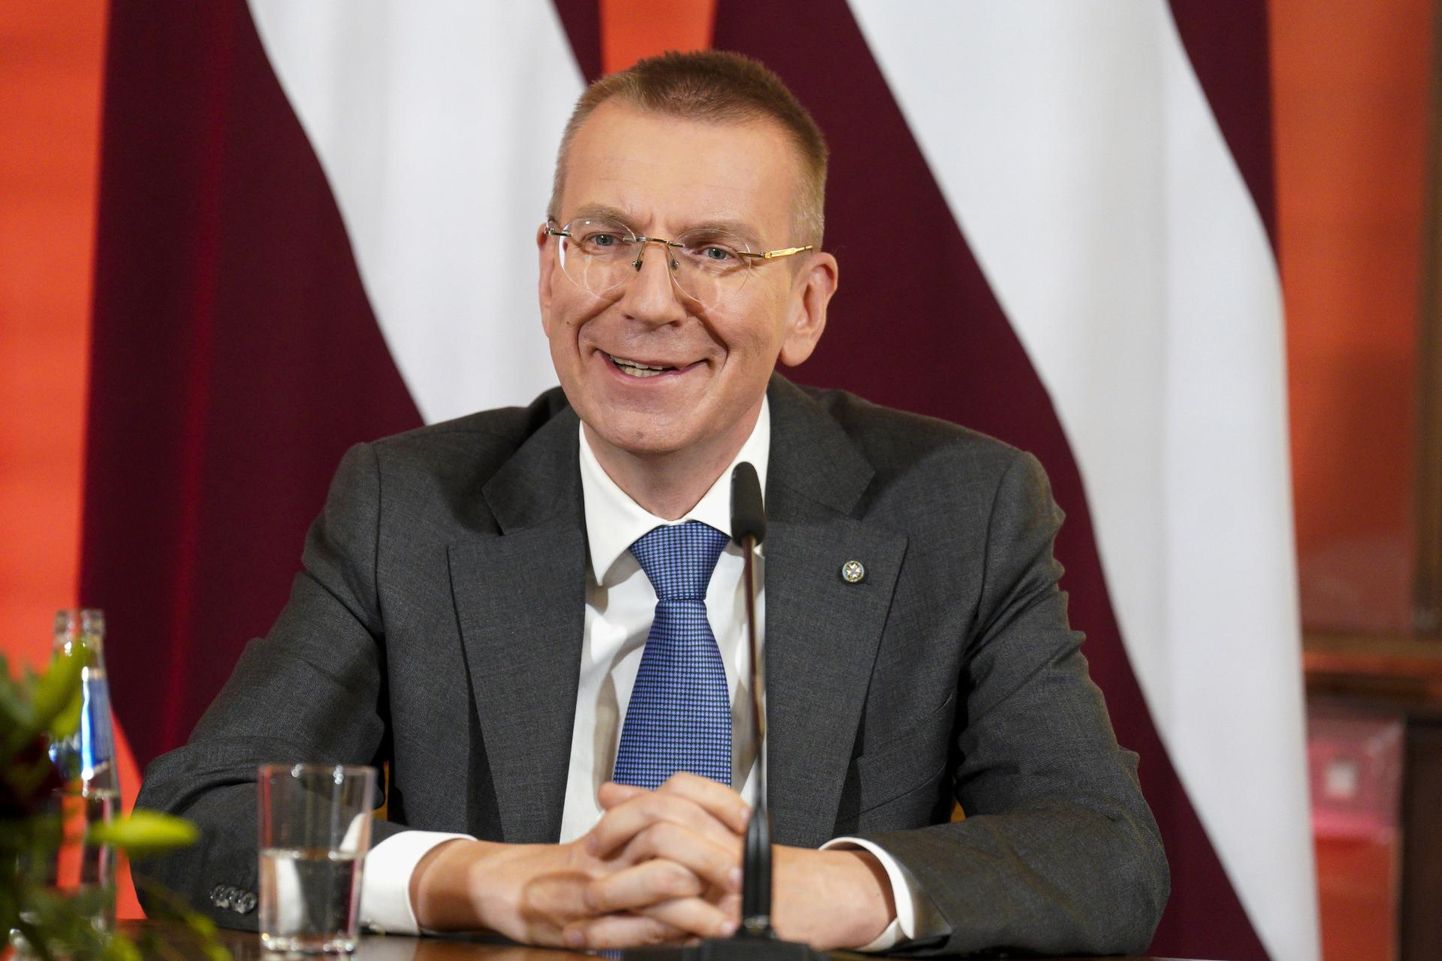 Vastvalitud Läti president Edgars Rinkēvičs pressikonverentsil ajakirjanike ees. Läti presidendi valimised seimis näitasid lõhesid valitsuskoalitsioonis, peaminister Krišjānis Kariņšil seisab ees ülesanne laiendada koalitsiooni opositsiooni võrra, kelle häältega Rinkēvičs ametisse valiti.

 